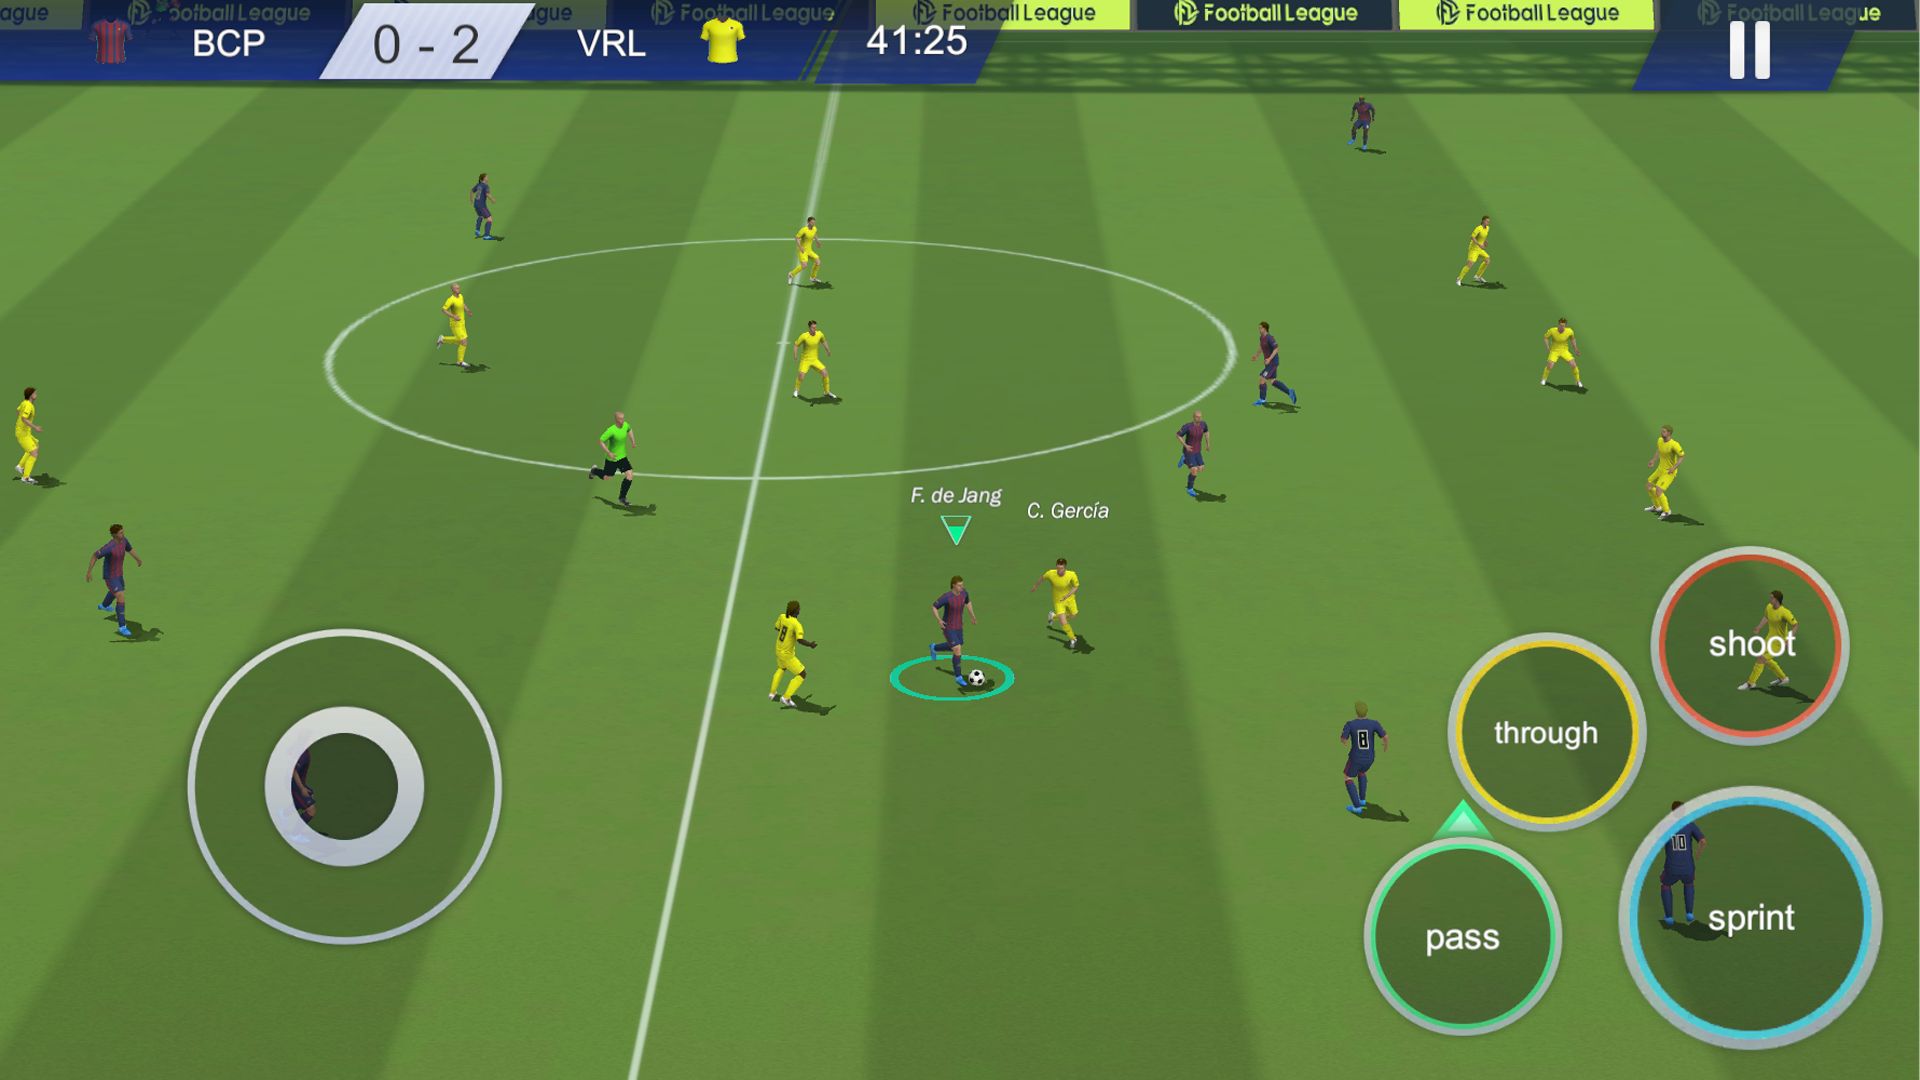 Liga Toon - Jogo de Futebol 2.7.11 para Android - APK Download